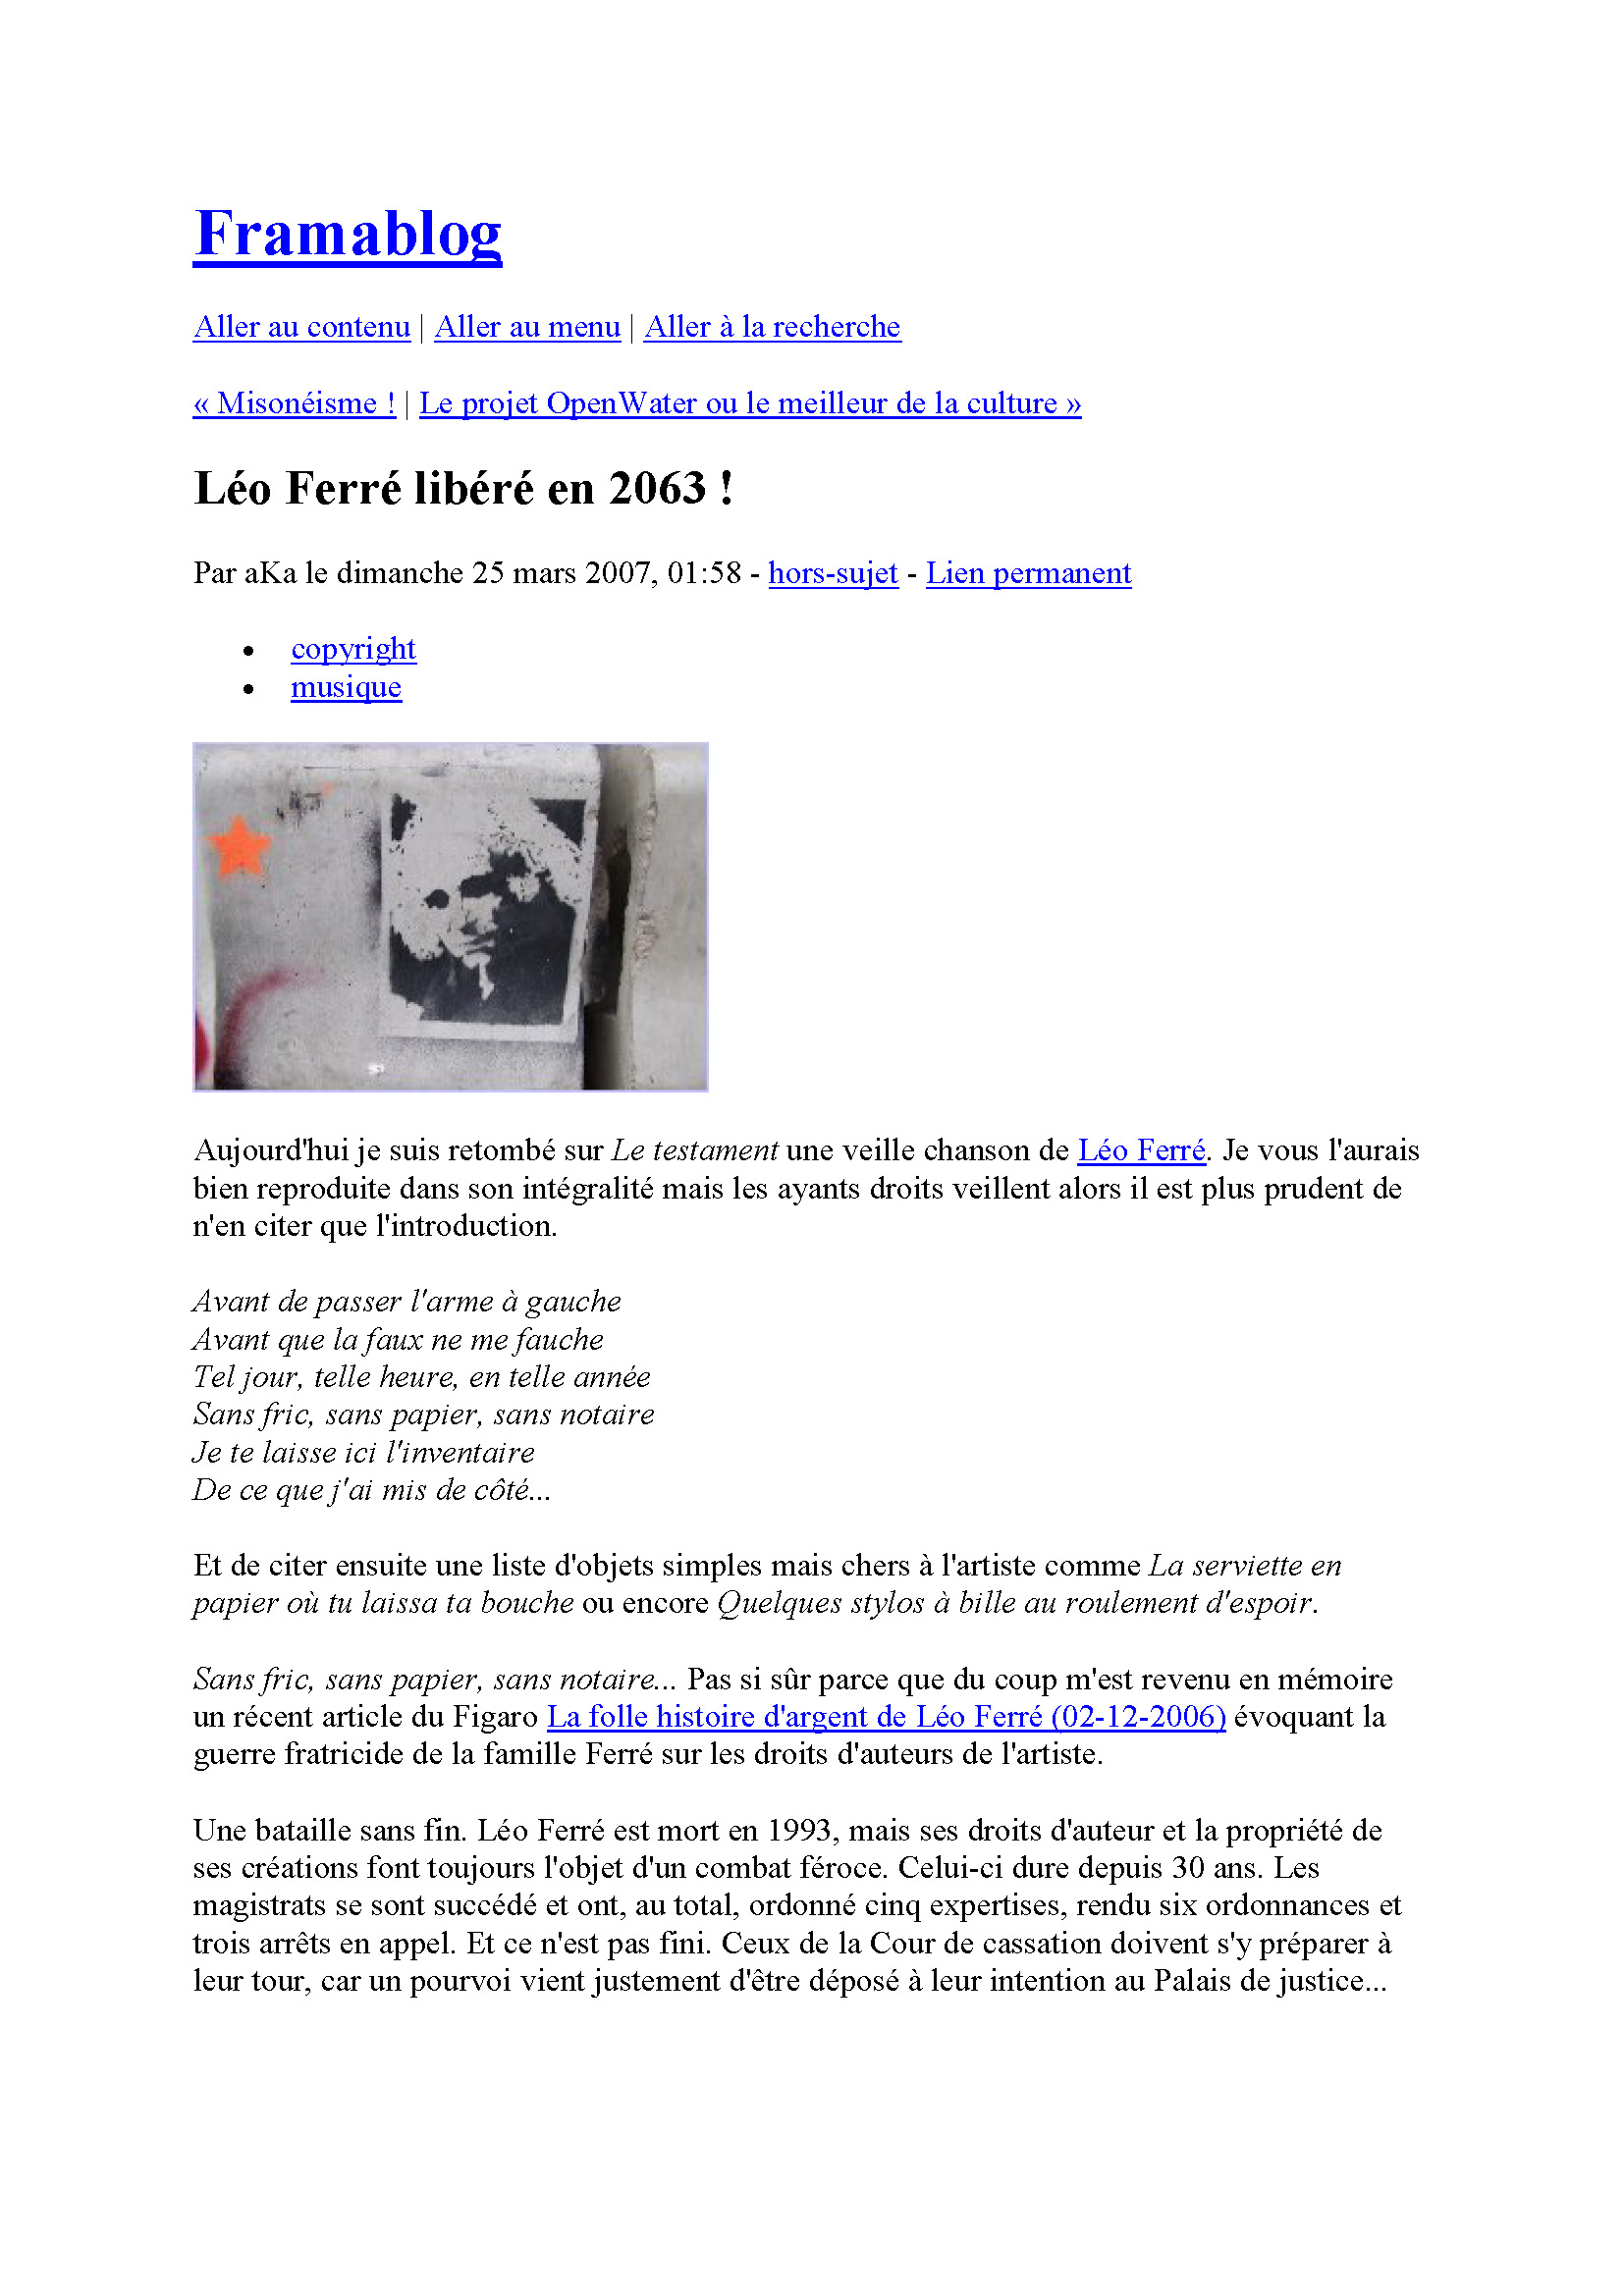 25/03/2007 Léo Ferré libéré en 2063